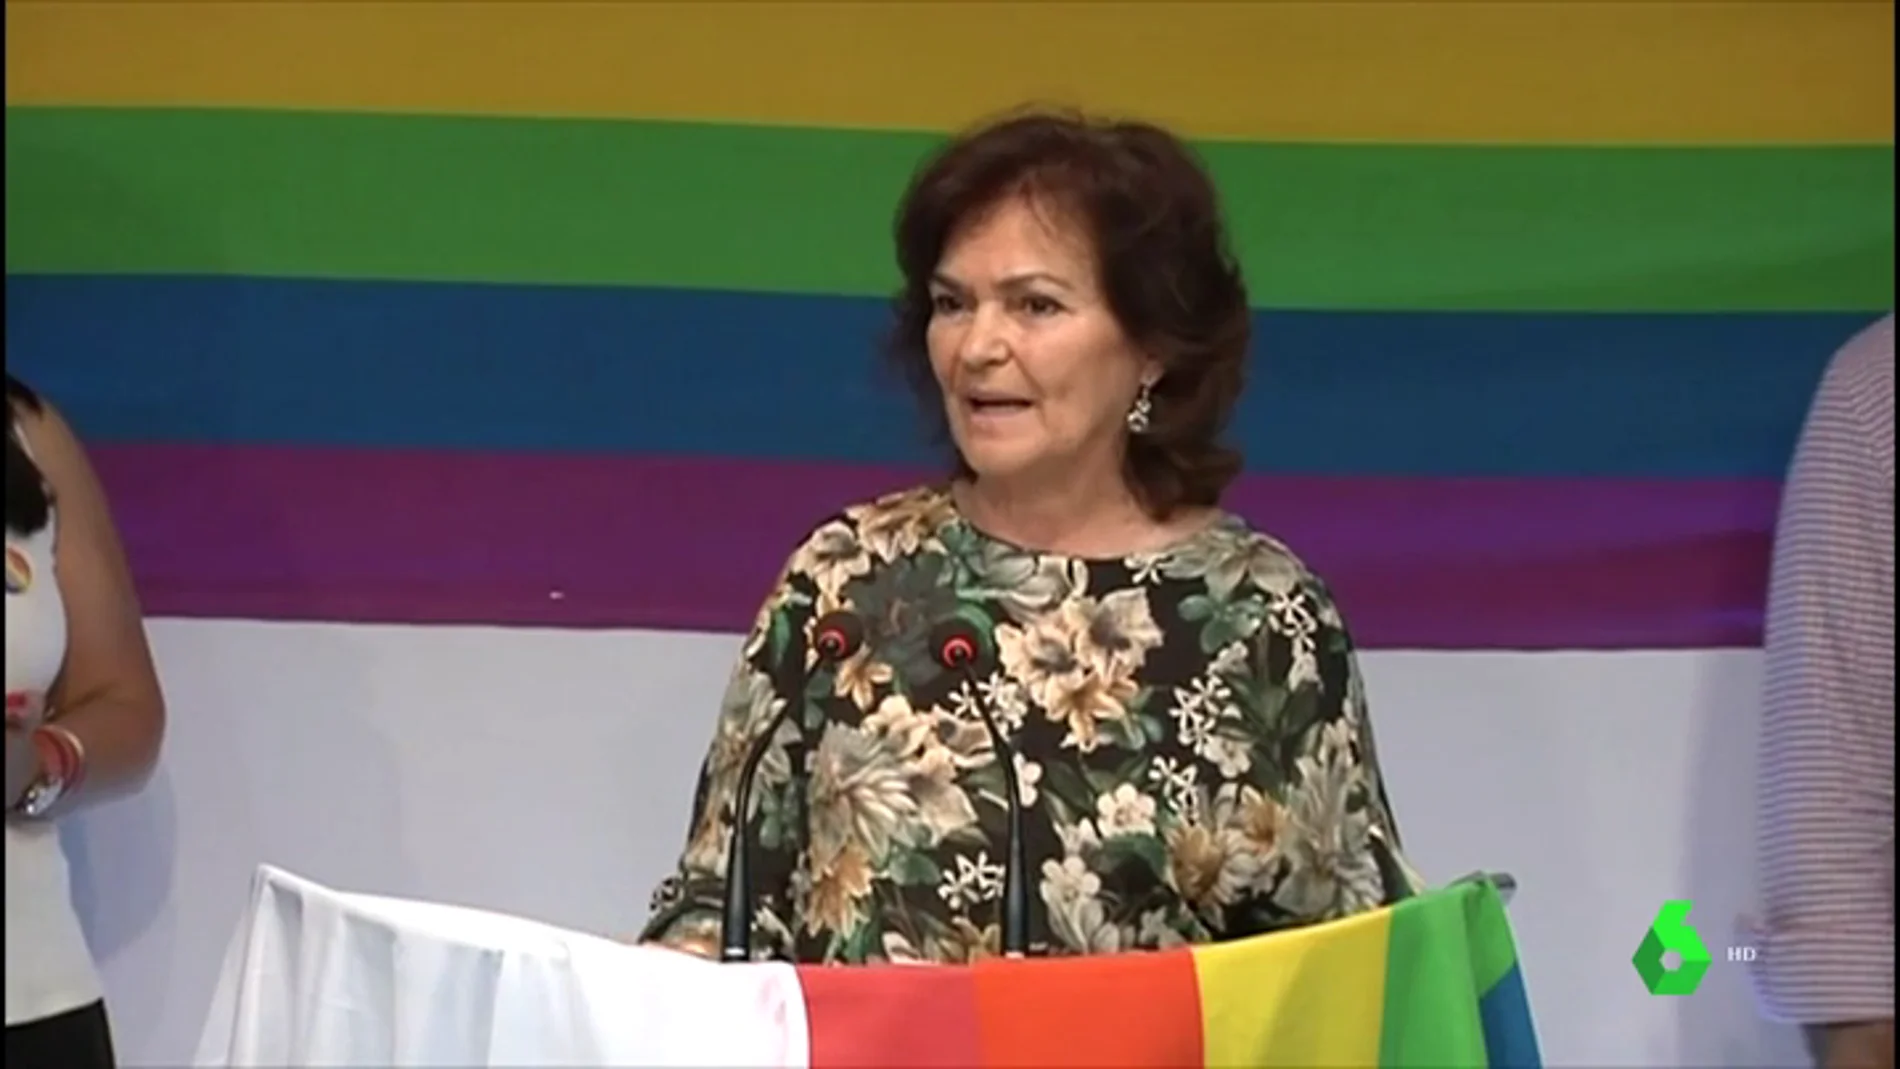 La vicepresidenta del Gobierno se dirige al colectivo LGTBI